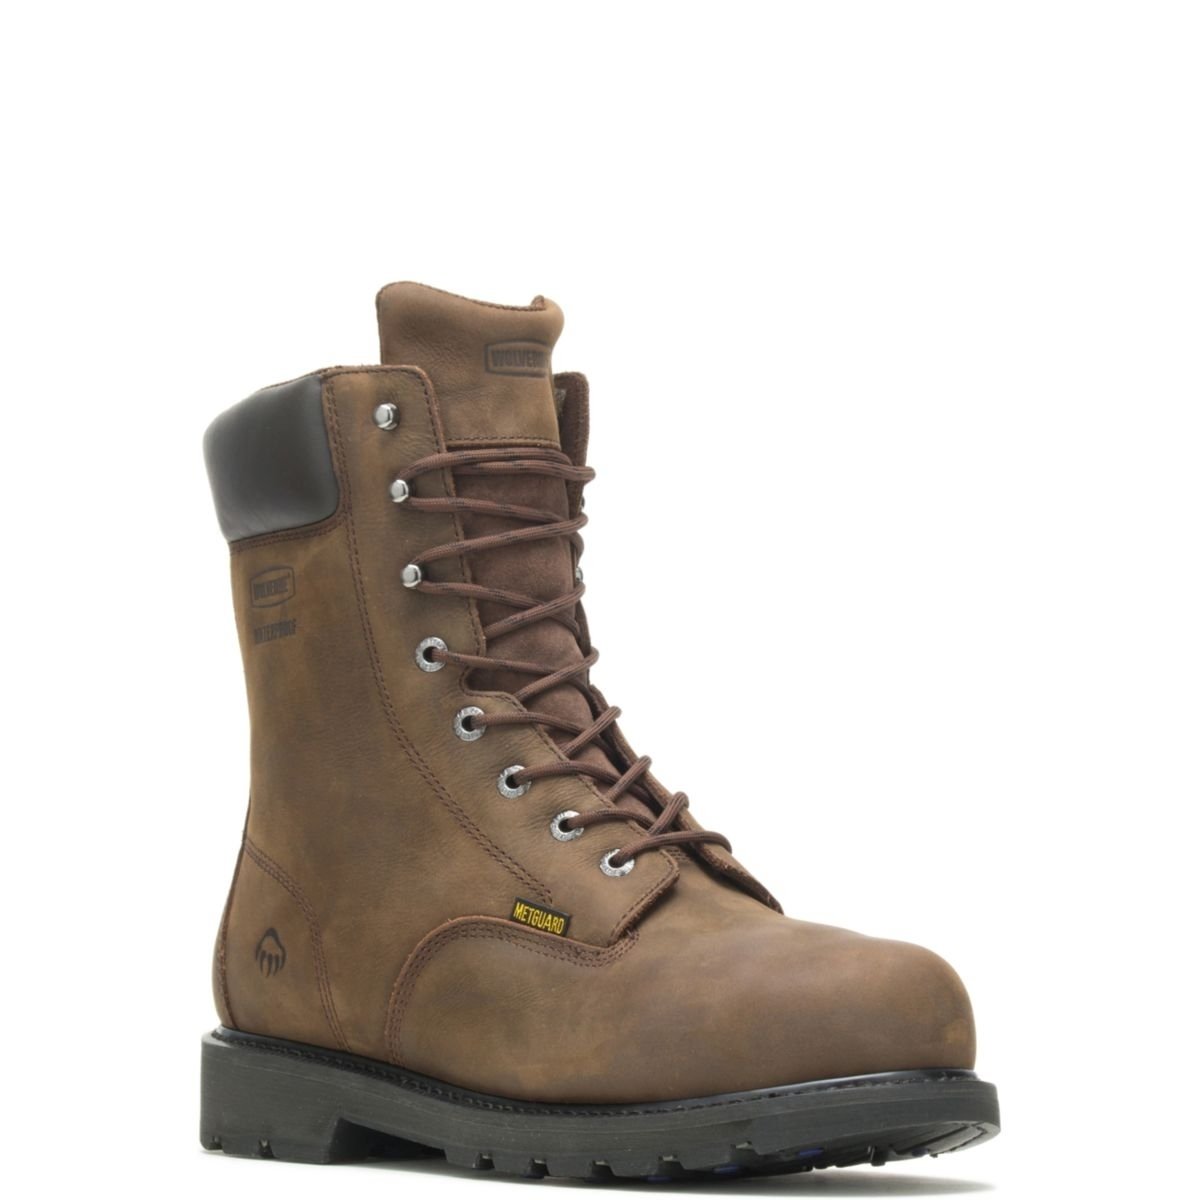 WOLVERINE Men's McKay 8 Waterproof Steel Toe Work Boot Brown - W05680 10 BROWN - BROWN, 8.5 X-Wide